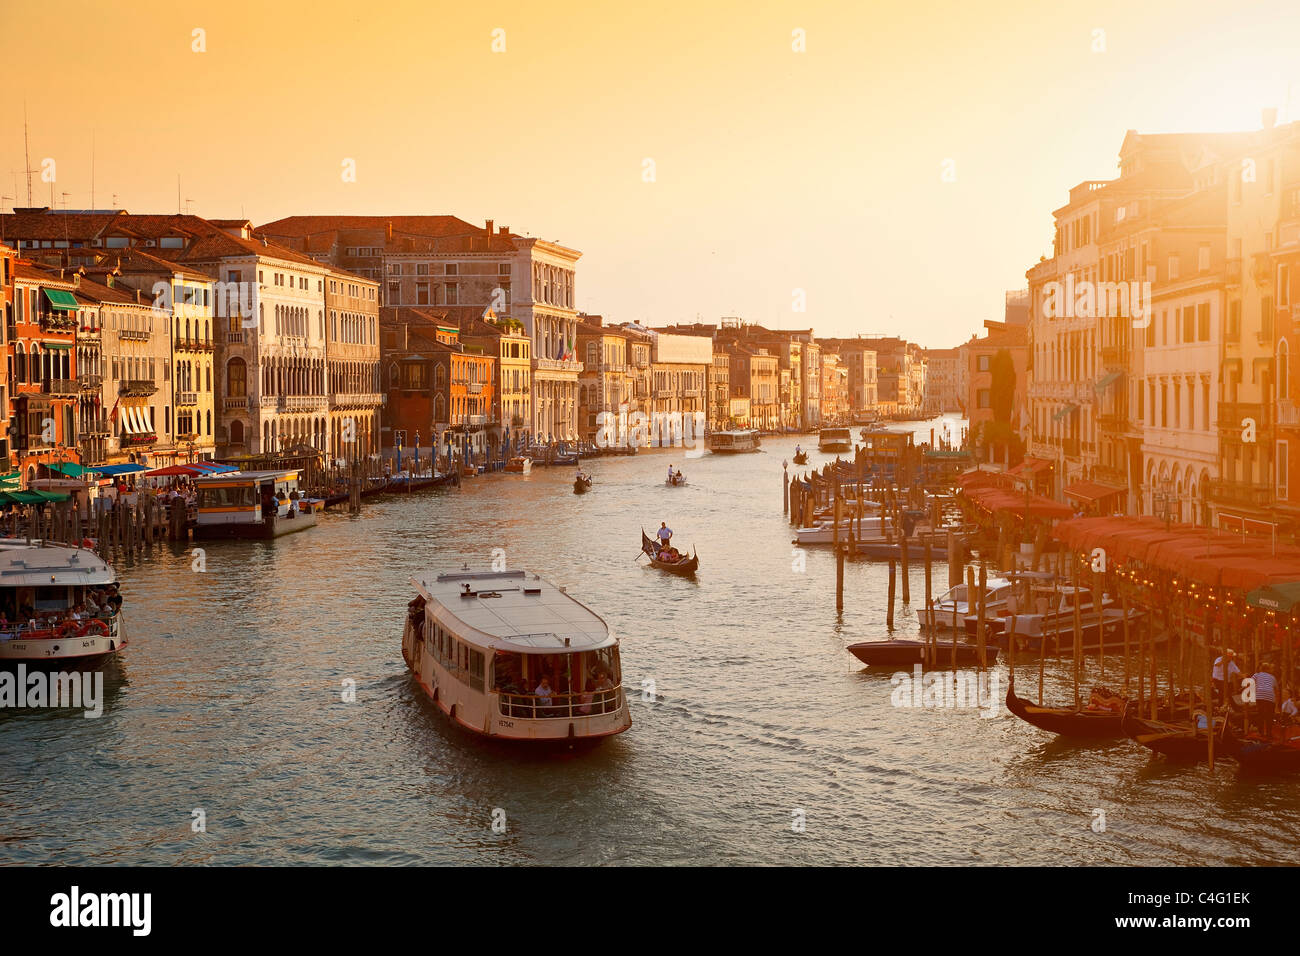 Venice, Grand Canal View from Rialto Bridge Stock Photo